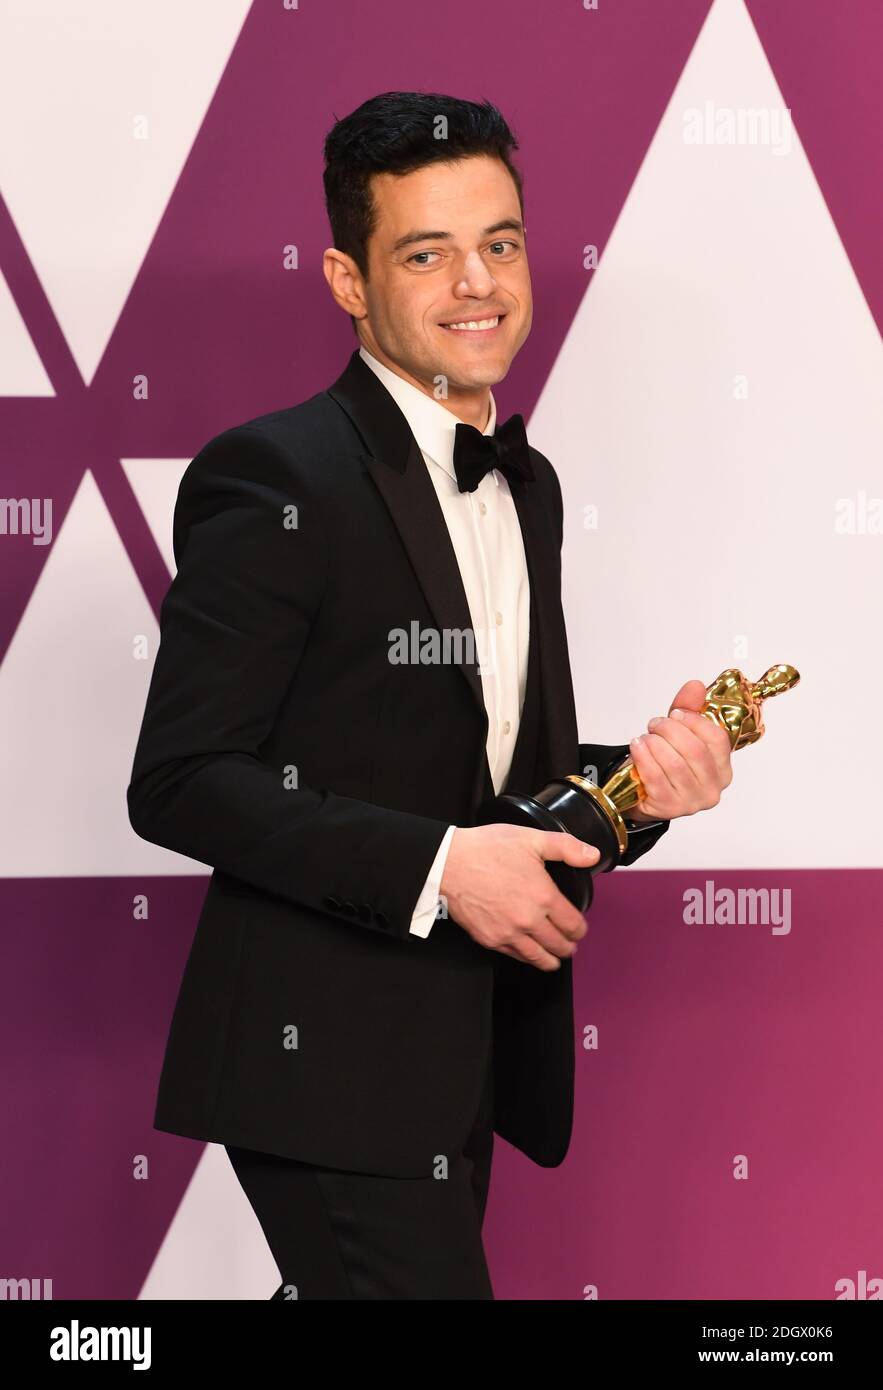 Rami Malek Gewinner des Oscar für den besten Darsteller im Pressesaal bei den 91. Academy Awards im Dolby Theater in Hollywood, Los Angeles, USA. Bildnachweis sollte lauten: Doug Peters/EMPICS. Stockfoto